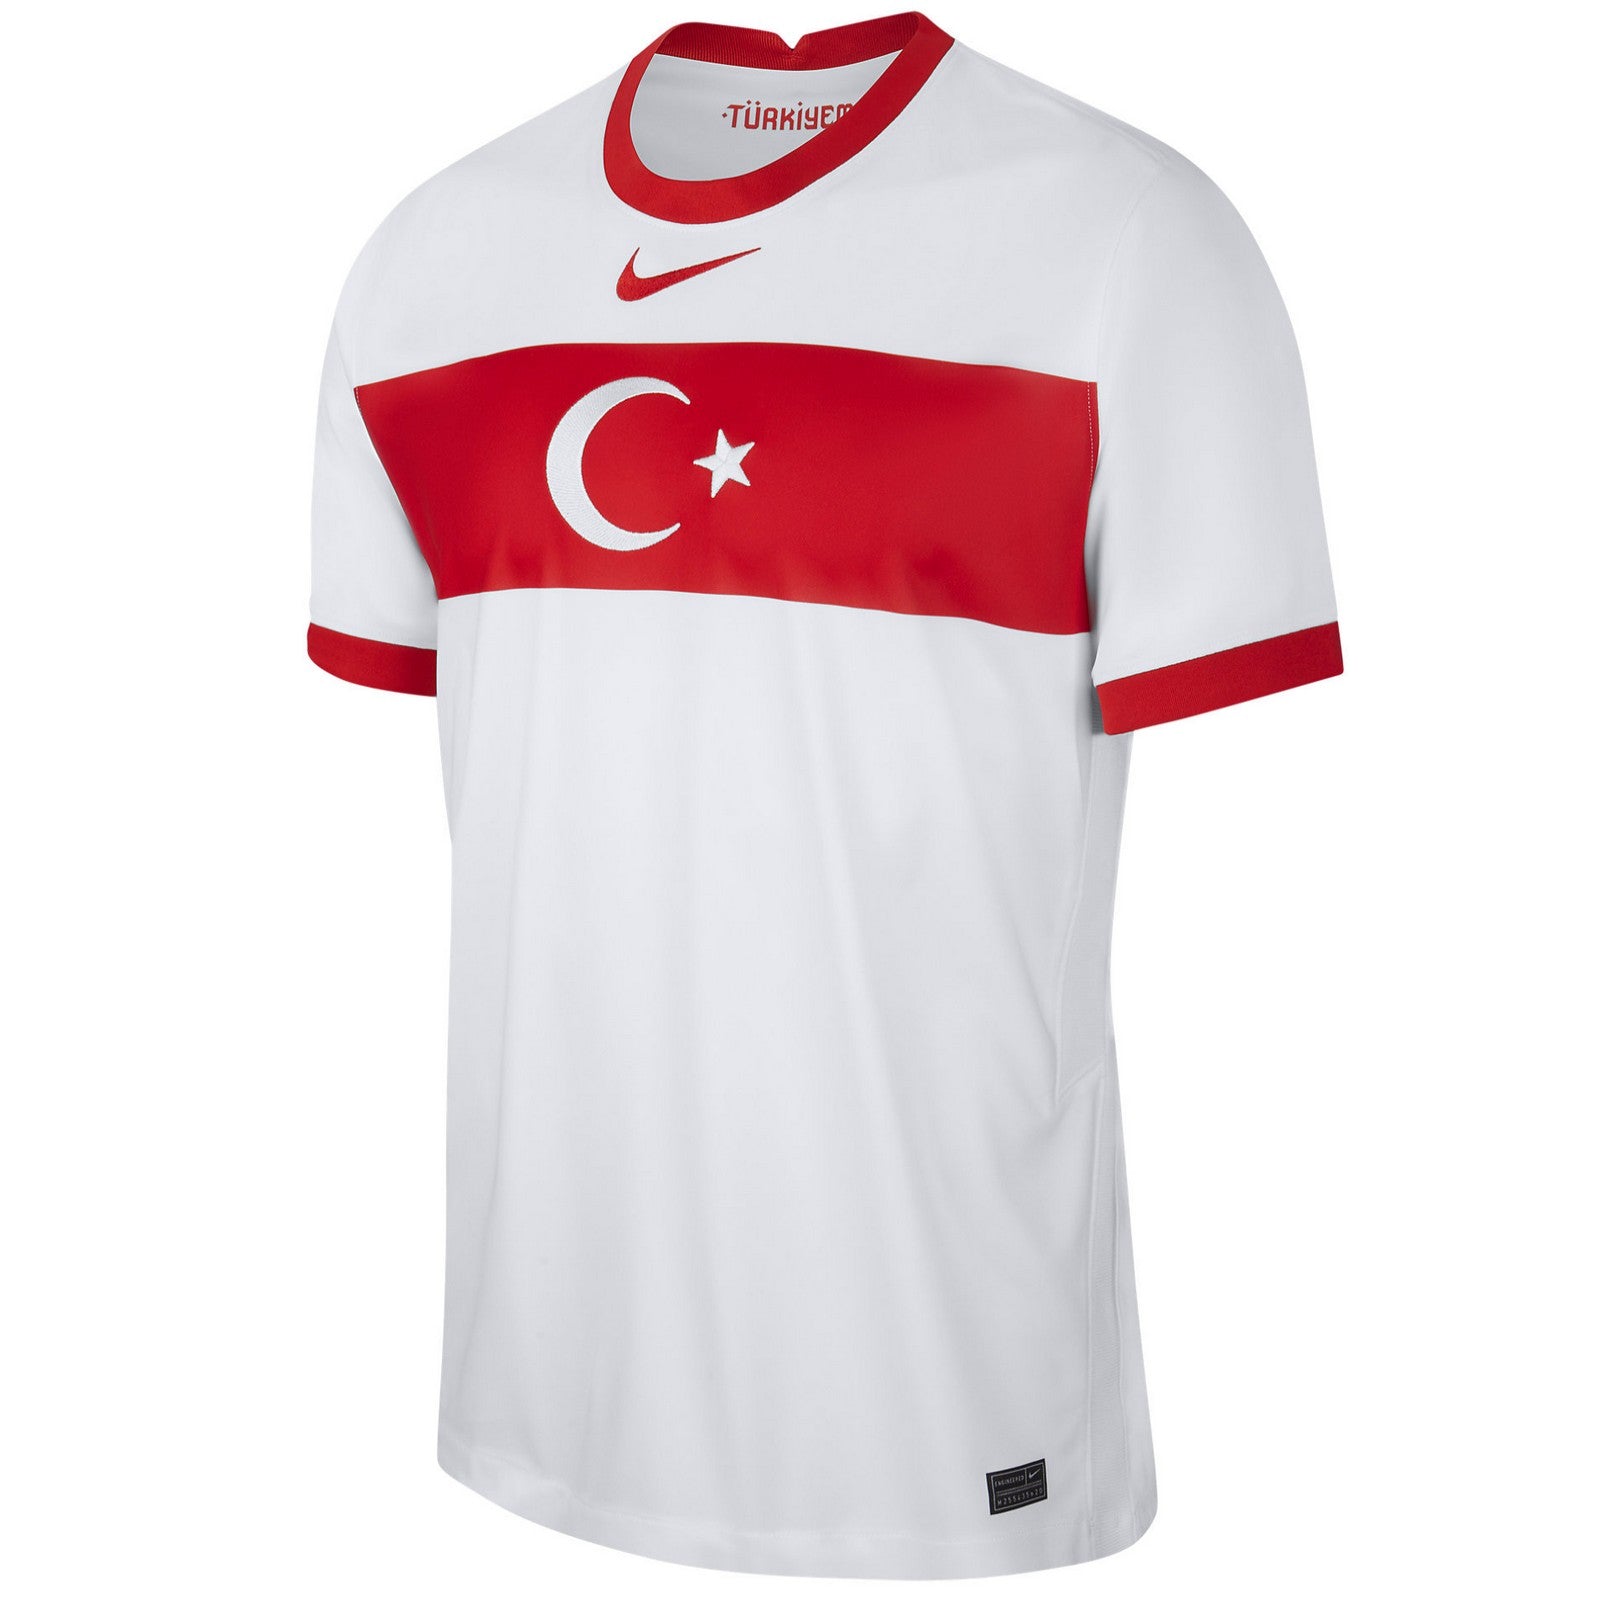 tumor Rondsel beklimmen Turkey national team Home soccer jersey 2020/21 - Nike –  SoccerTracksuits.com